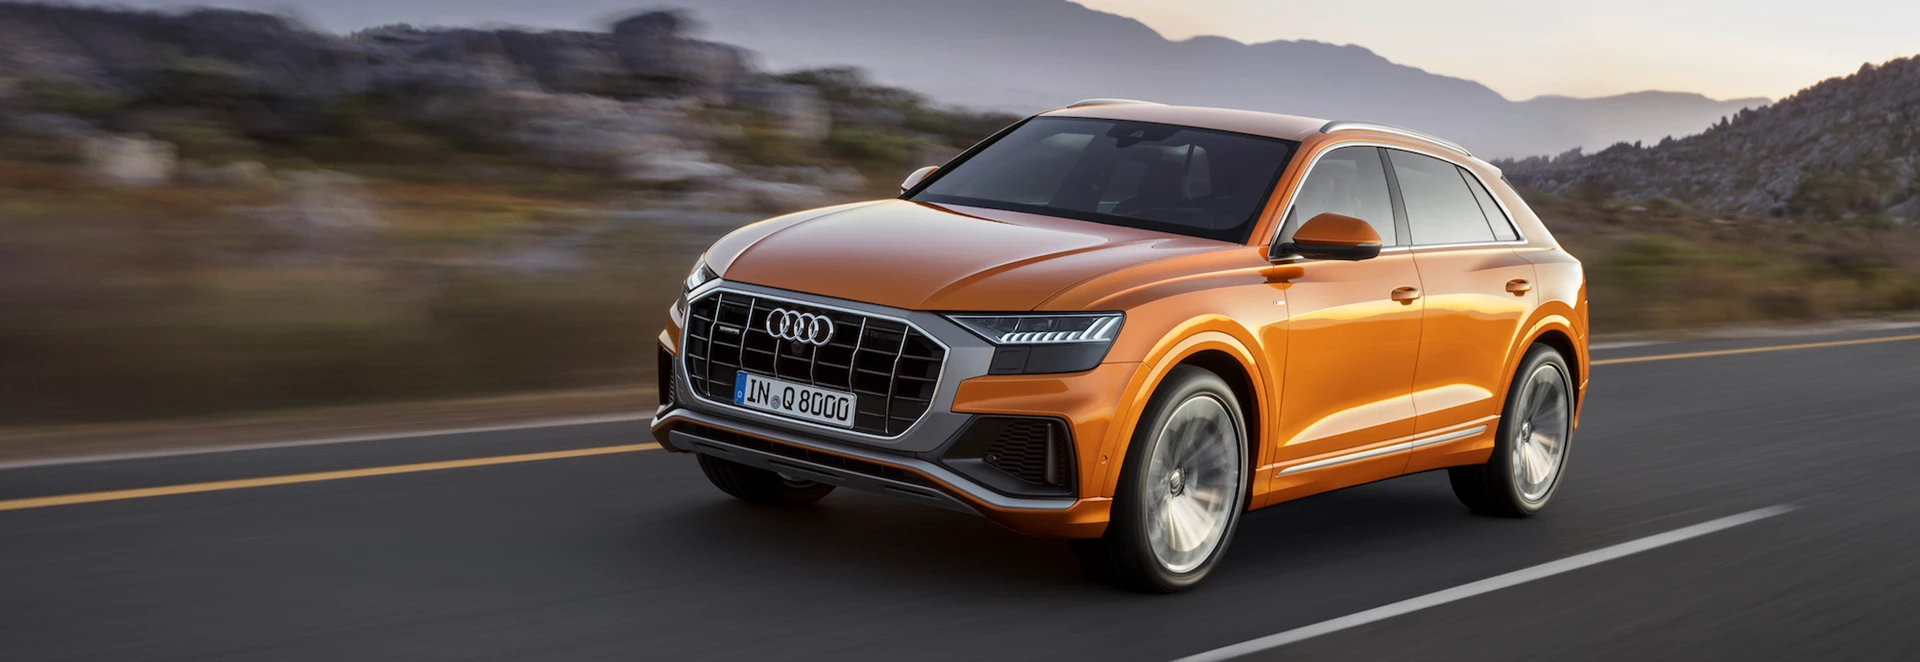 Audi Q range: What’s on offer?